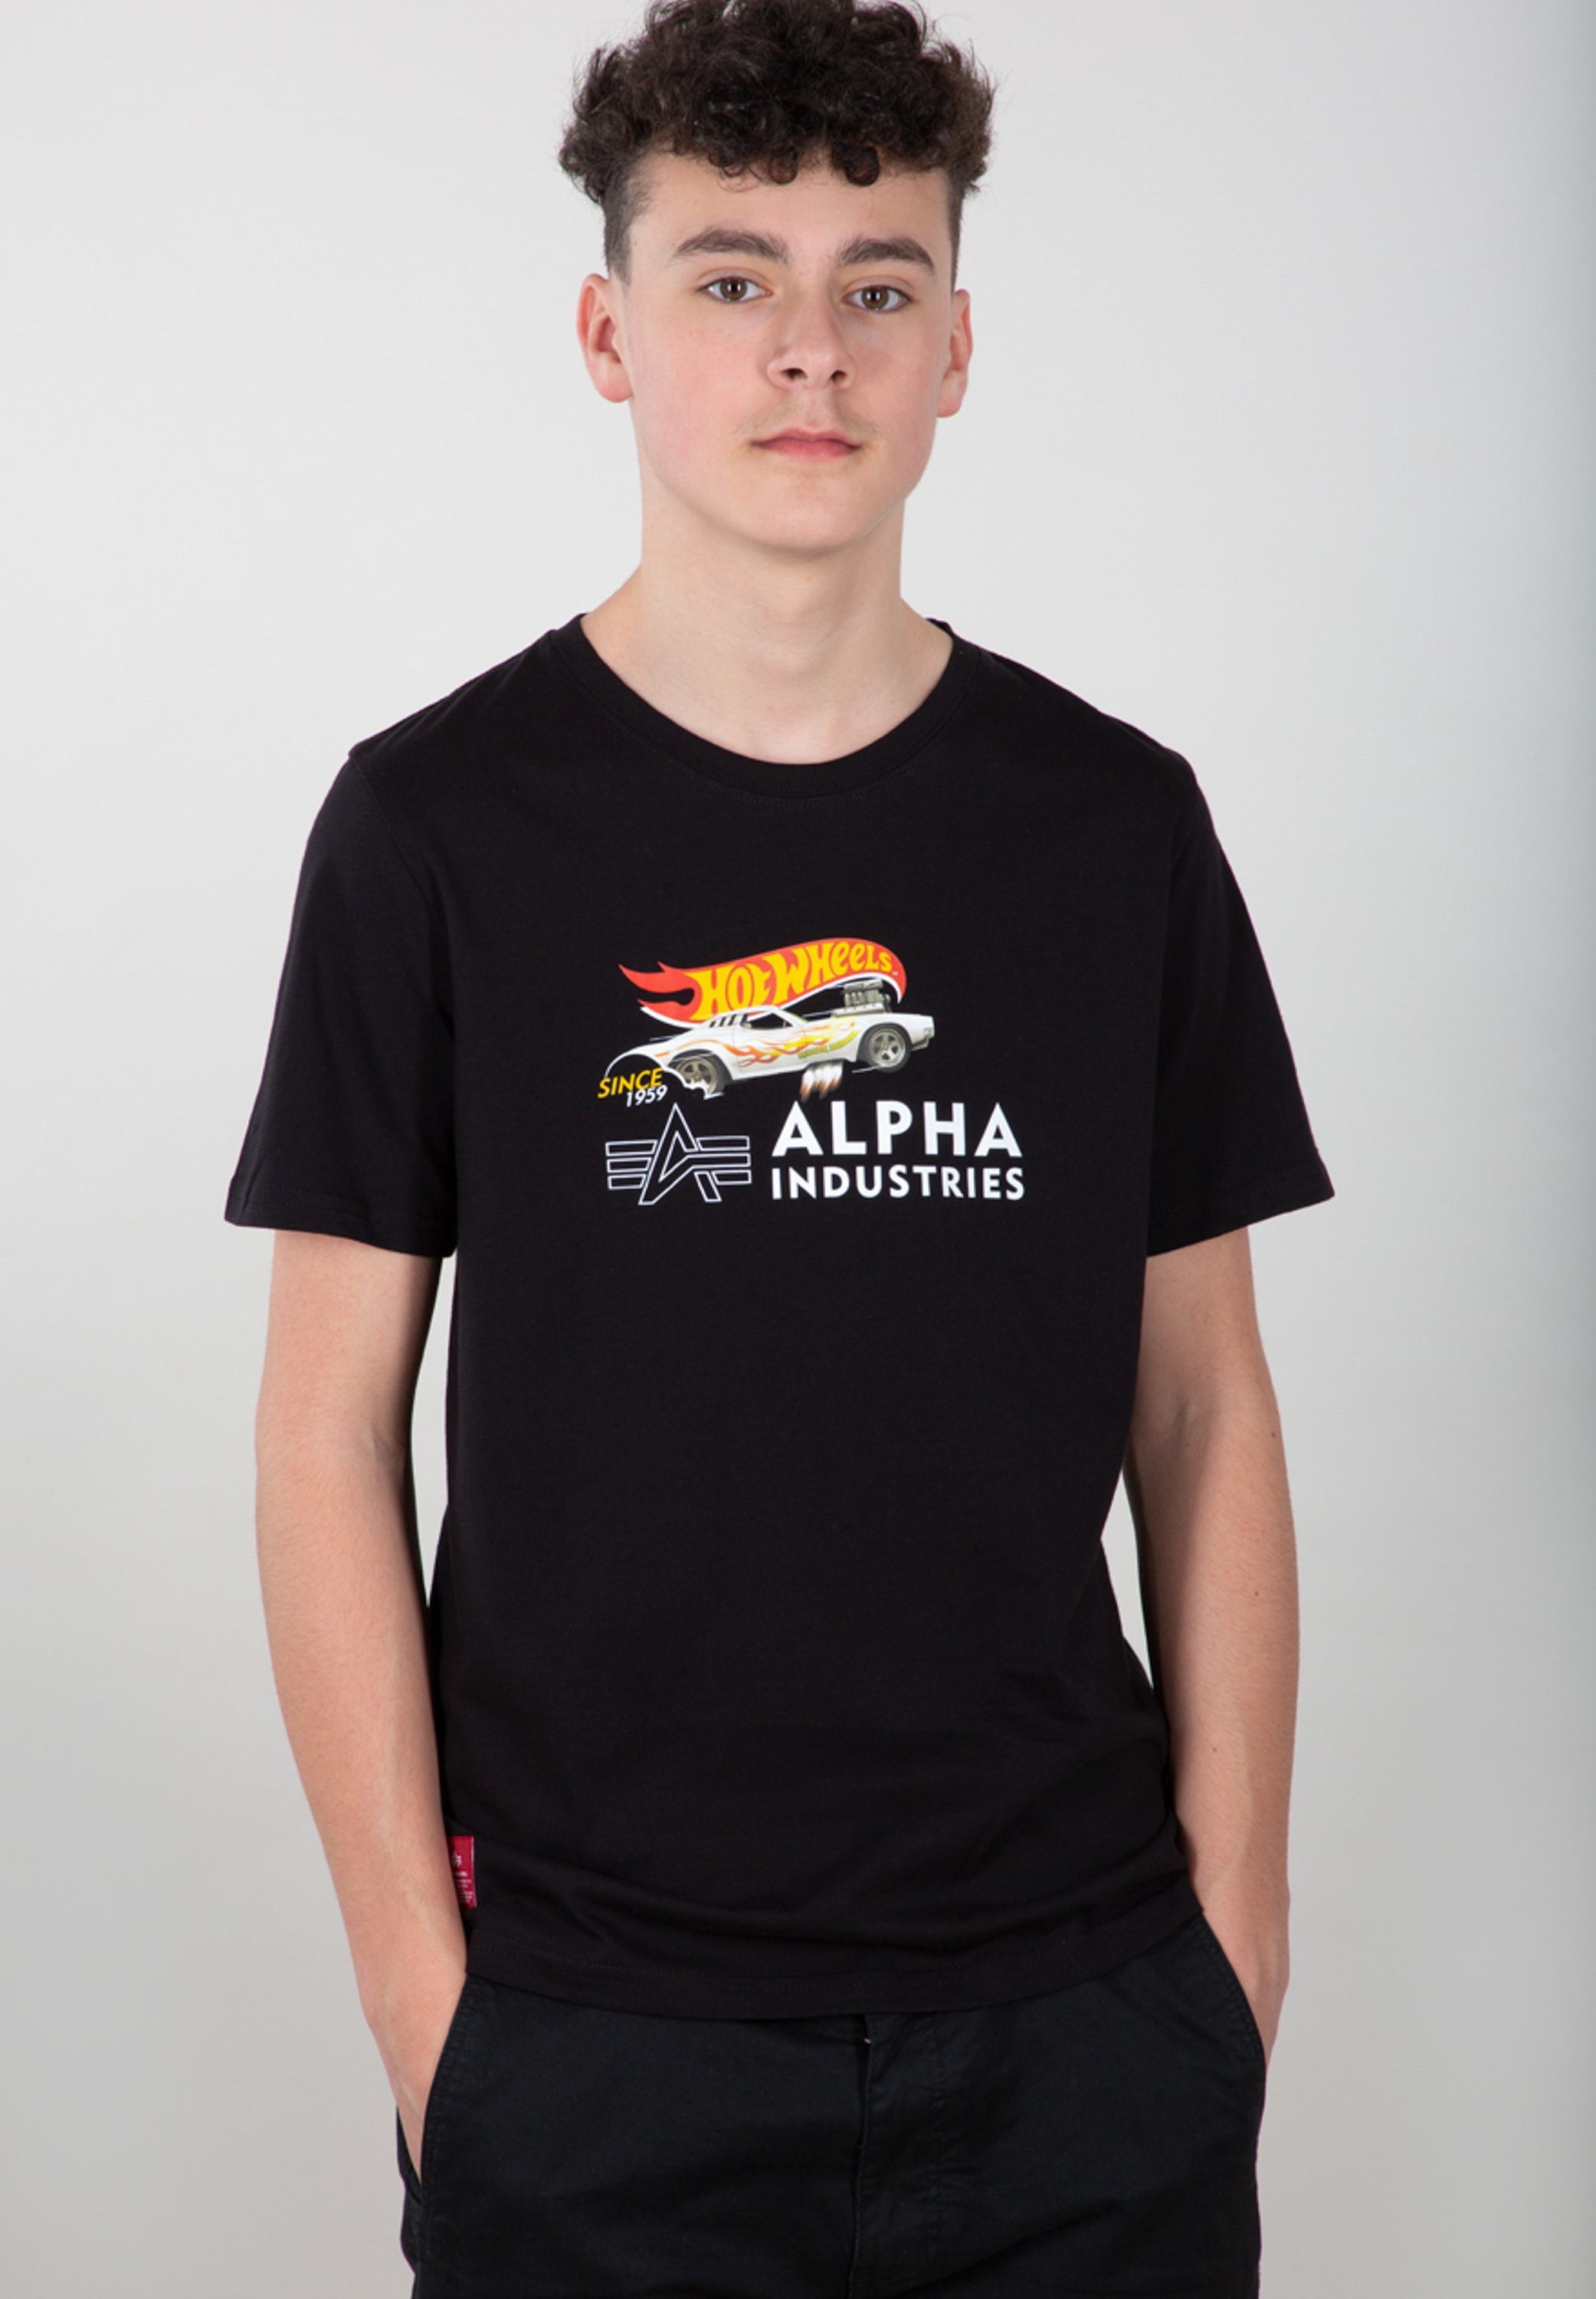 Alpha Industries T-shirt Kids T-Shirts Rodger Dodger T Kids Teens